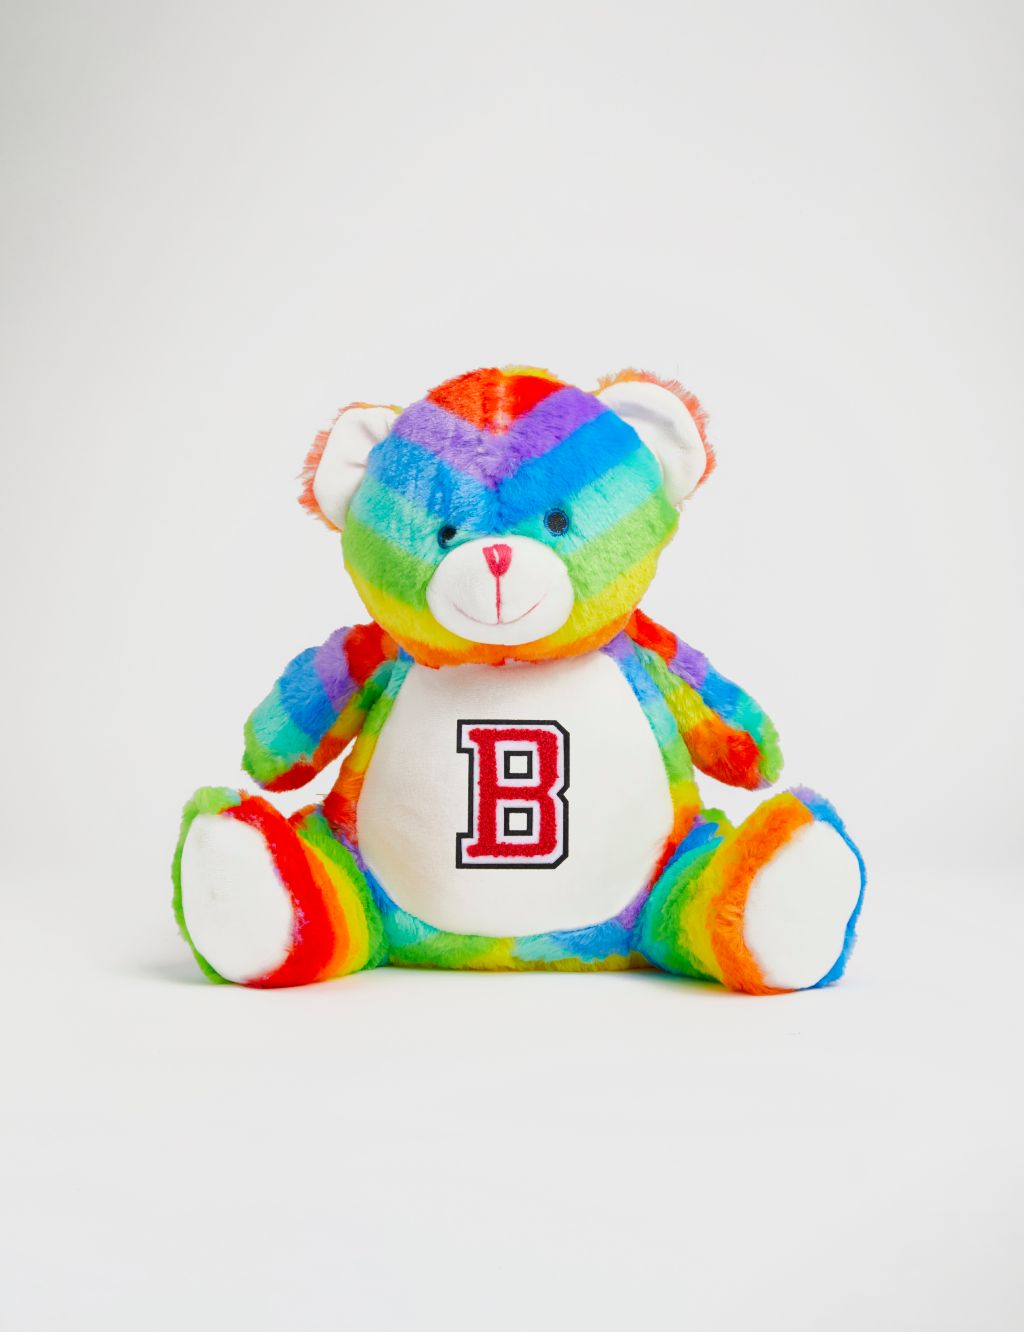 Personalised Soft Plush Rainbow Bear image 1